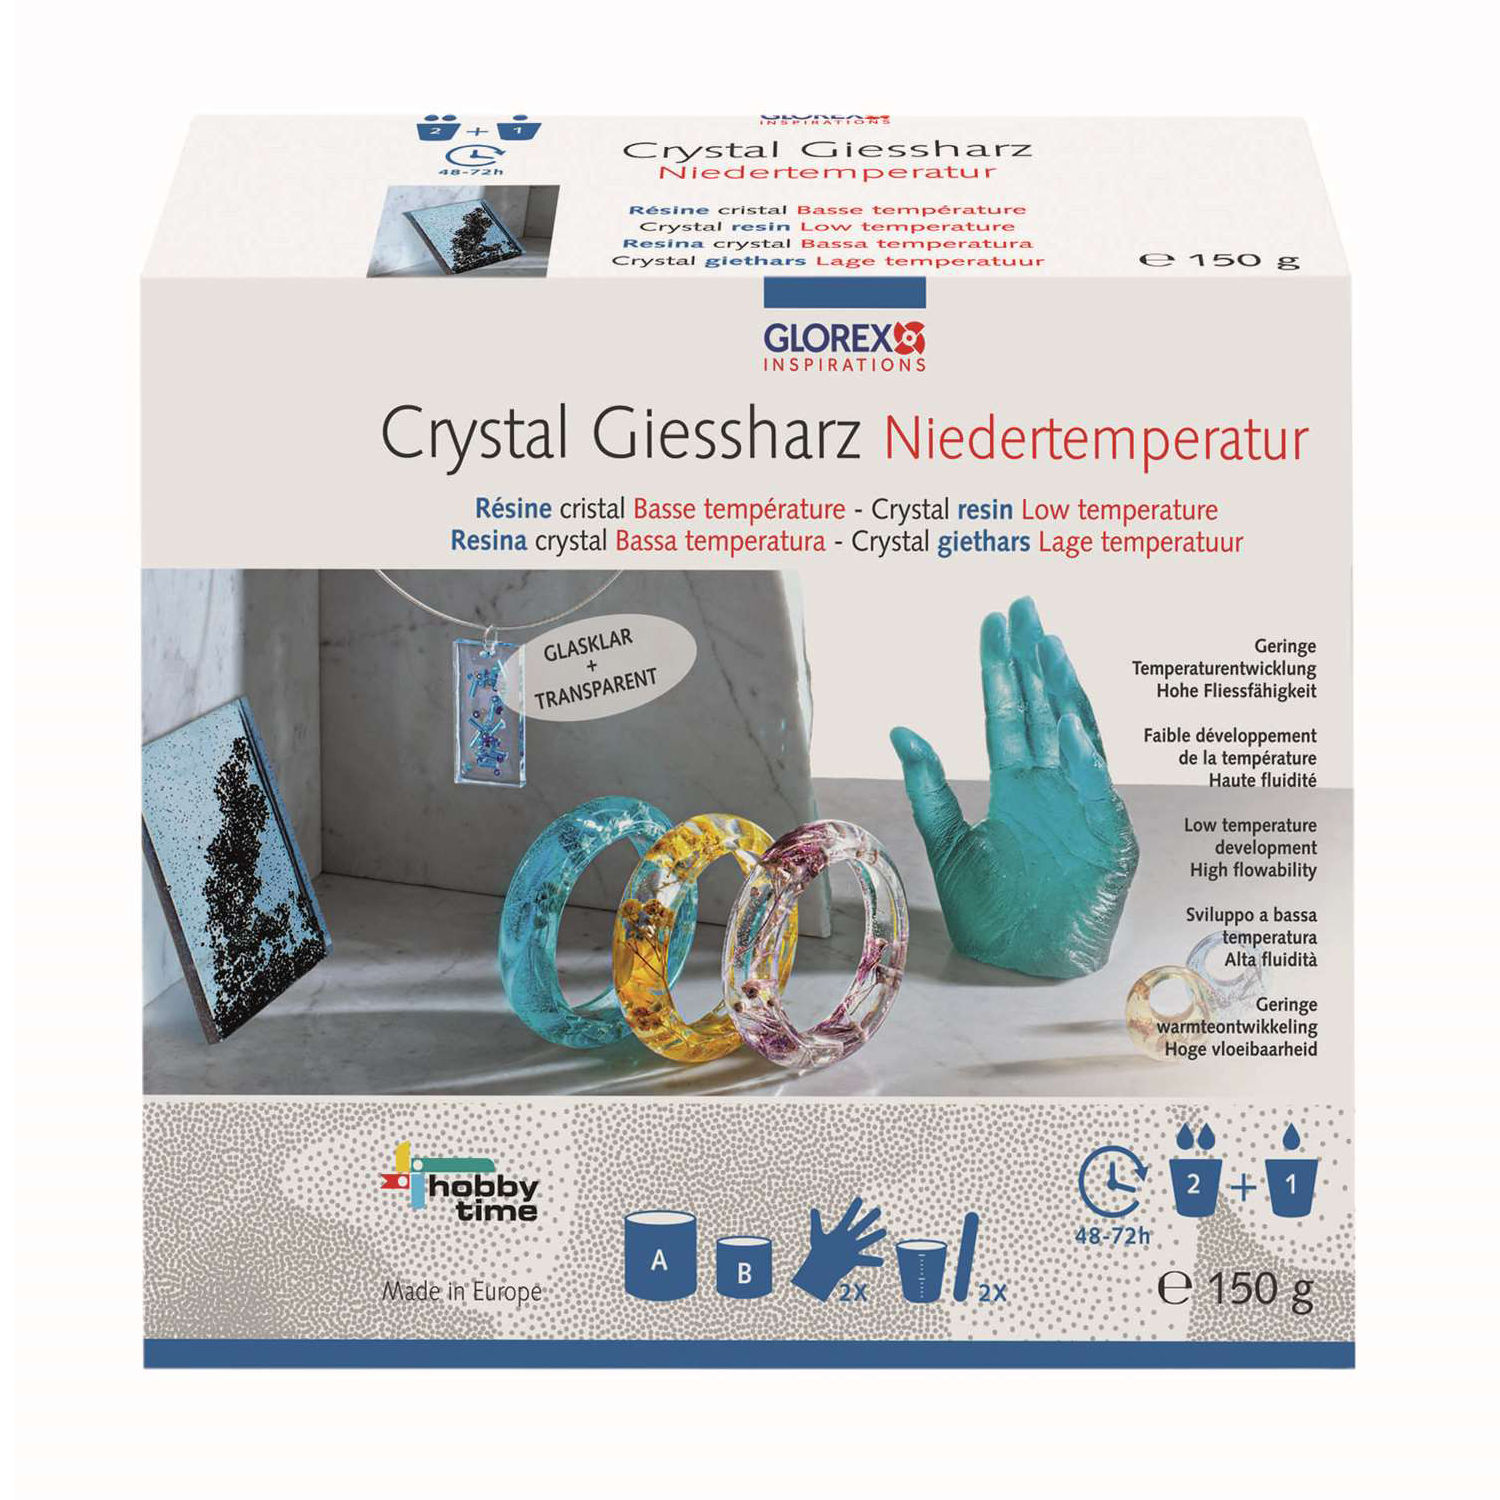 NEU Crystal-Gießharz Niedertemperatur, 150 g